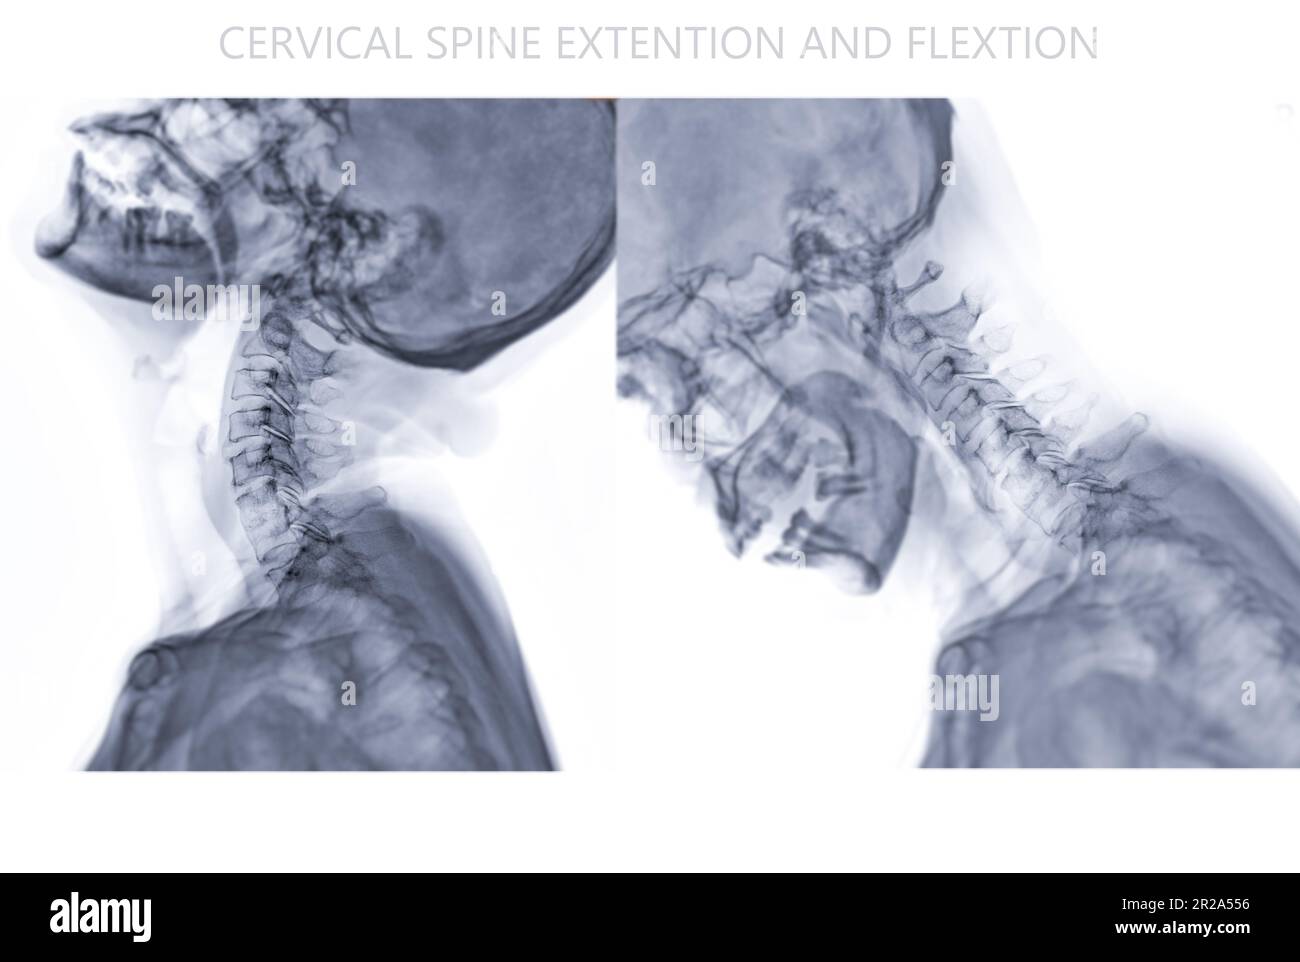 Immagine radiografica della colonna vertebrale cervicale o radiografica della flessione cervicale della colonna vertebrale e della vista di estensione per l'erniazione diagnostica del disco intervertebrale, la spondilosi e la frattura. Foto Stock